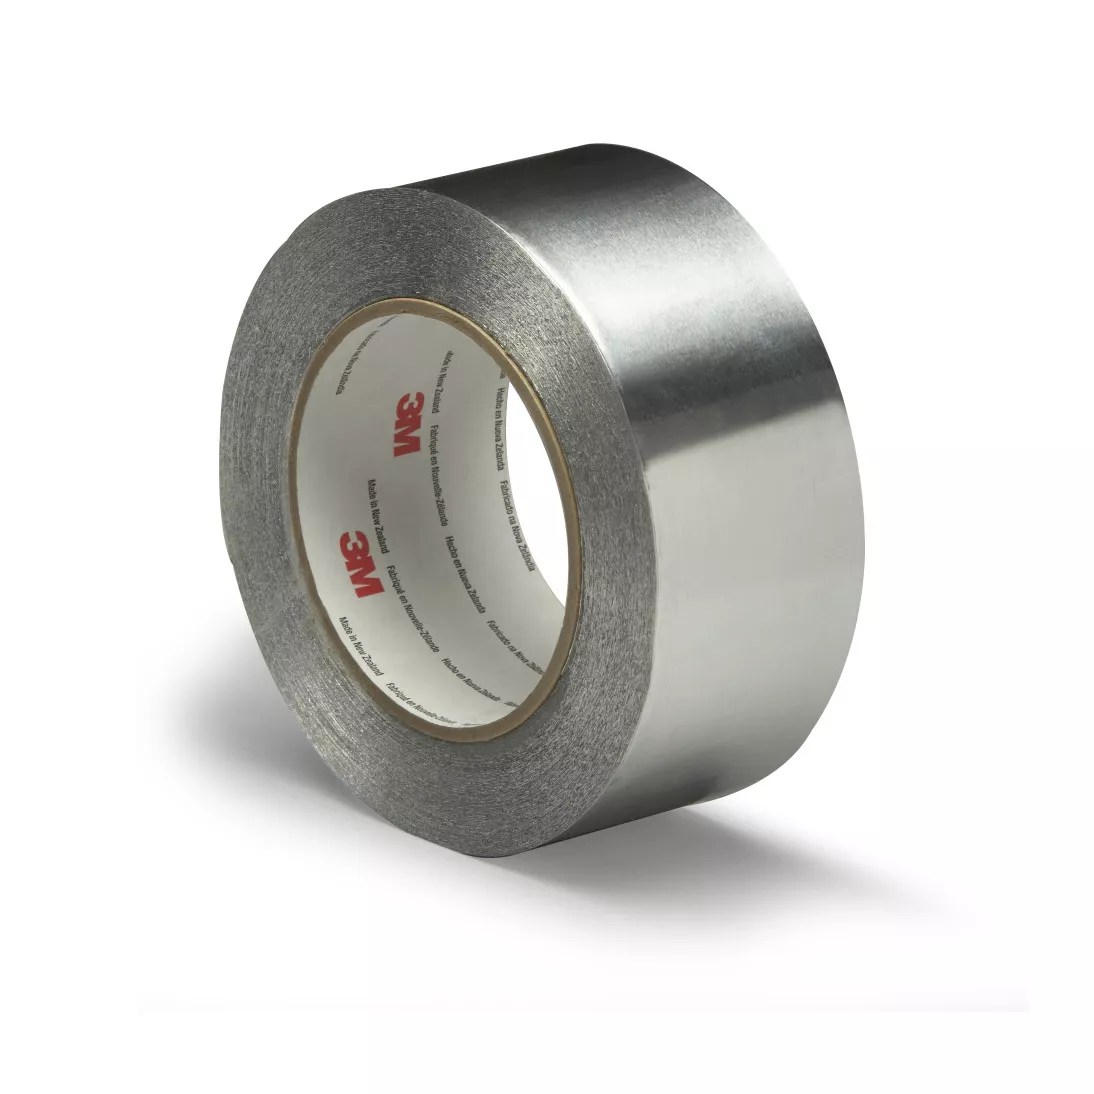 3M™ Aluminum Foil Tape 425, Silver, 2 in x 60 yd, 4.6 mil, 24 rolls per
case